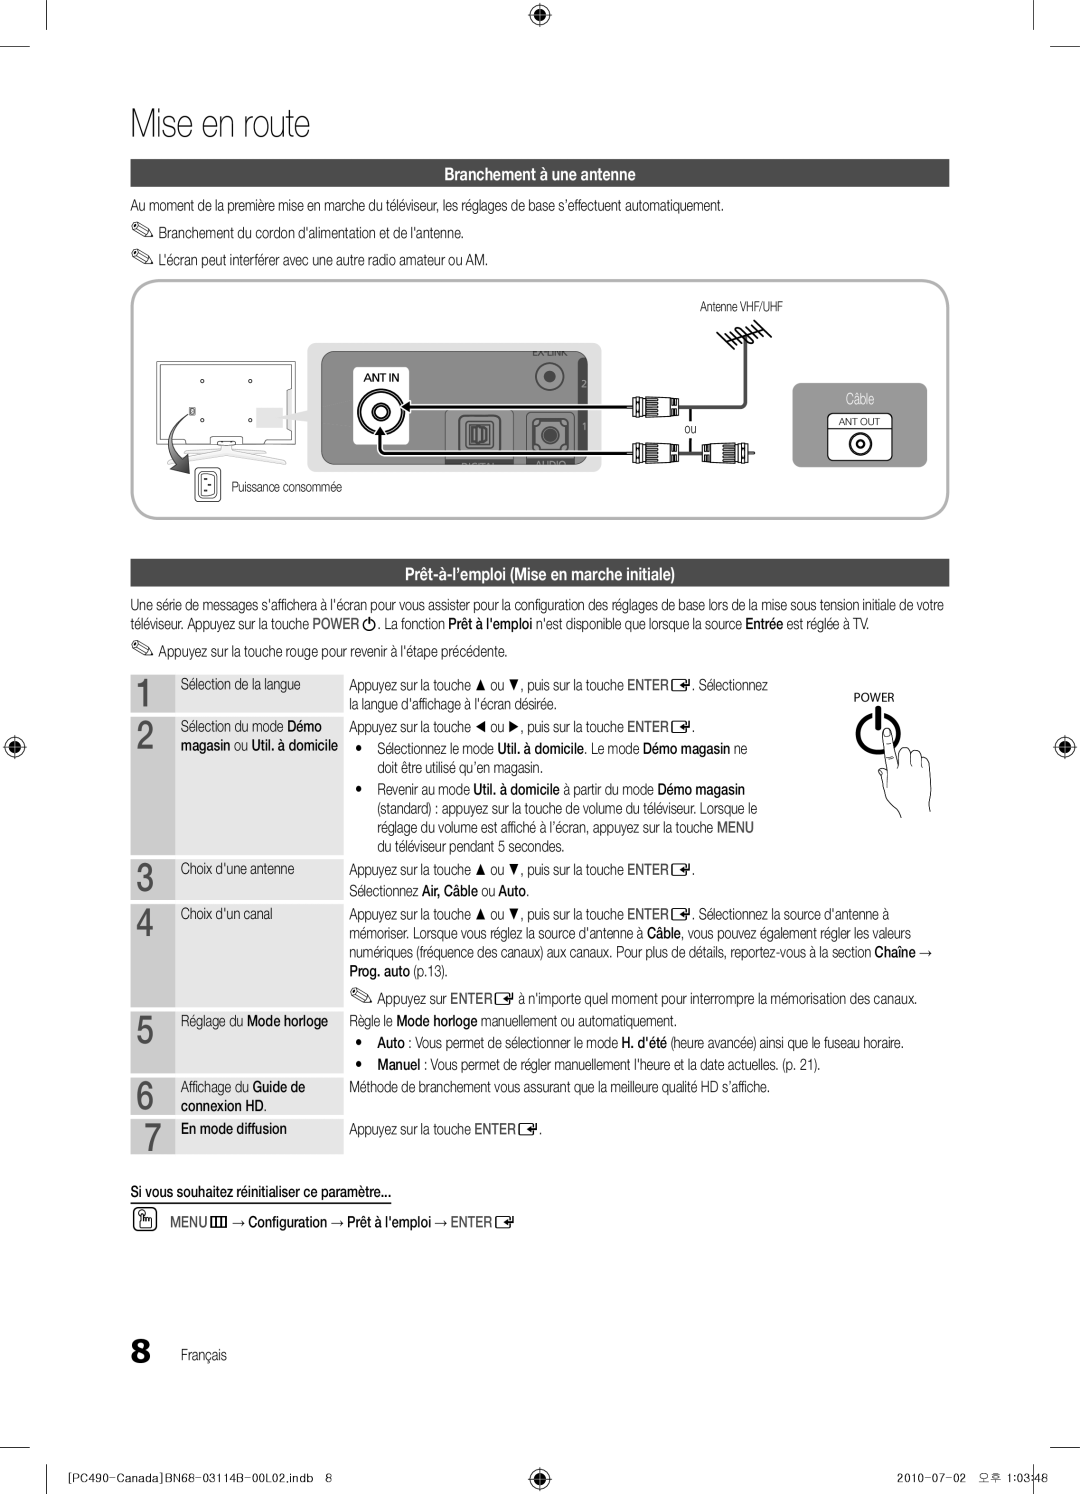 Samsung BN68-03114B-01 Branchement à une antenne, Prêt-à-l’emploi Mise en marche initiale, Câble, Sélection de la langue 